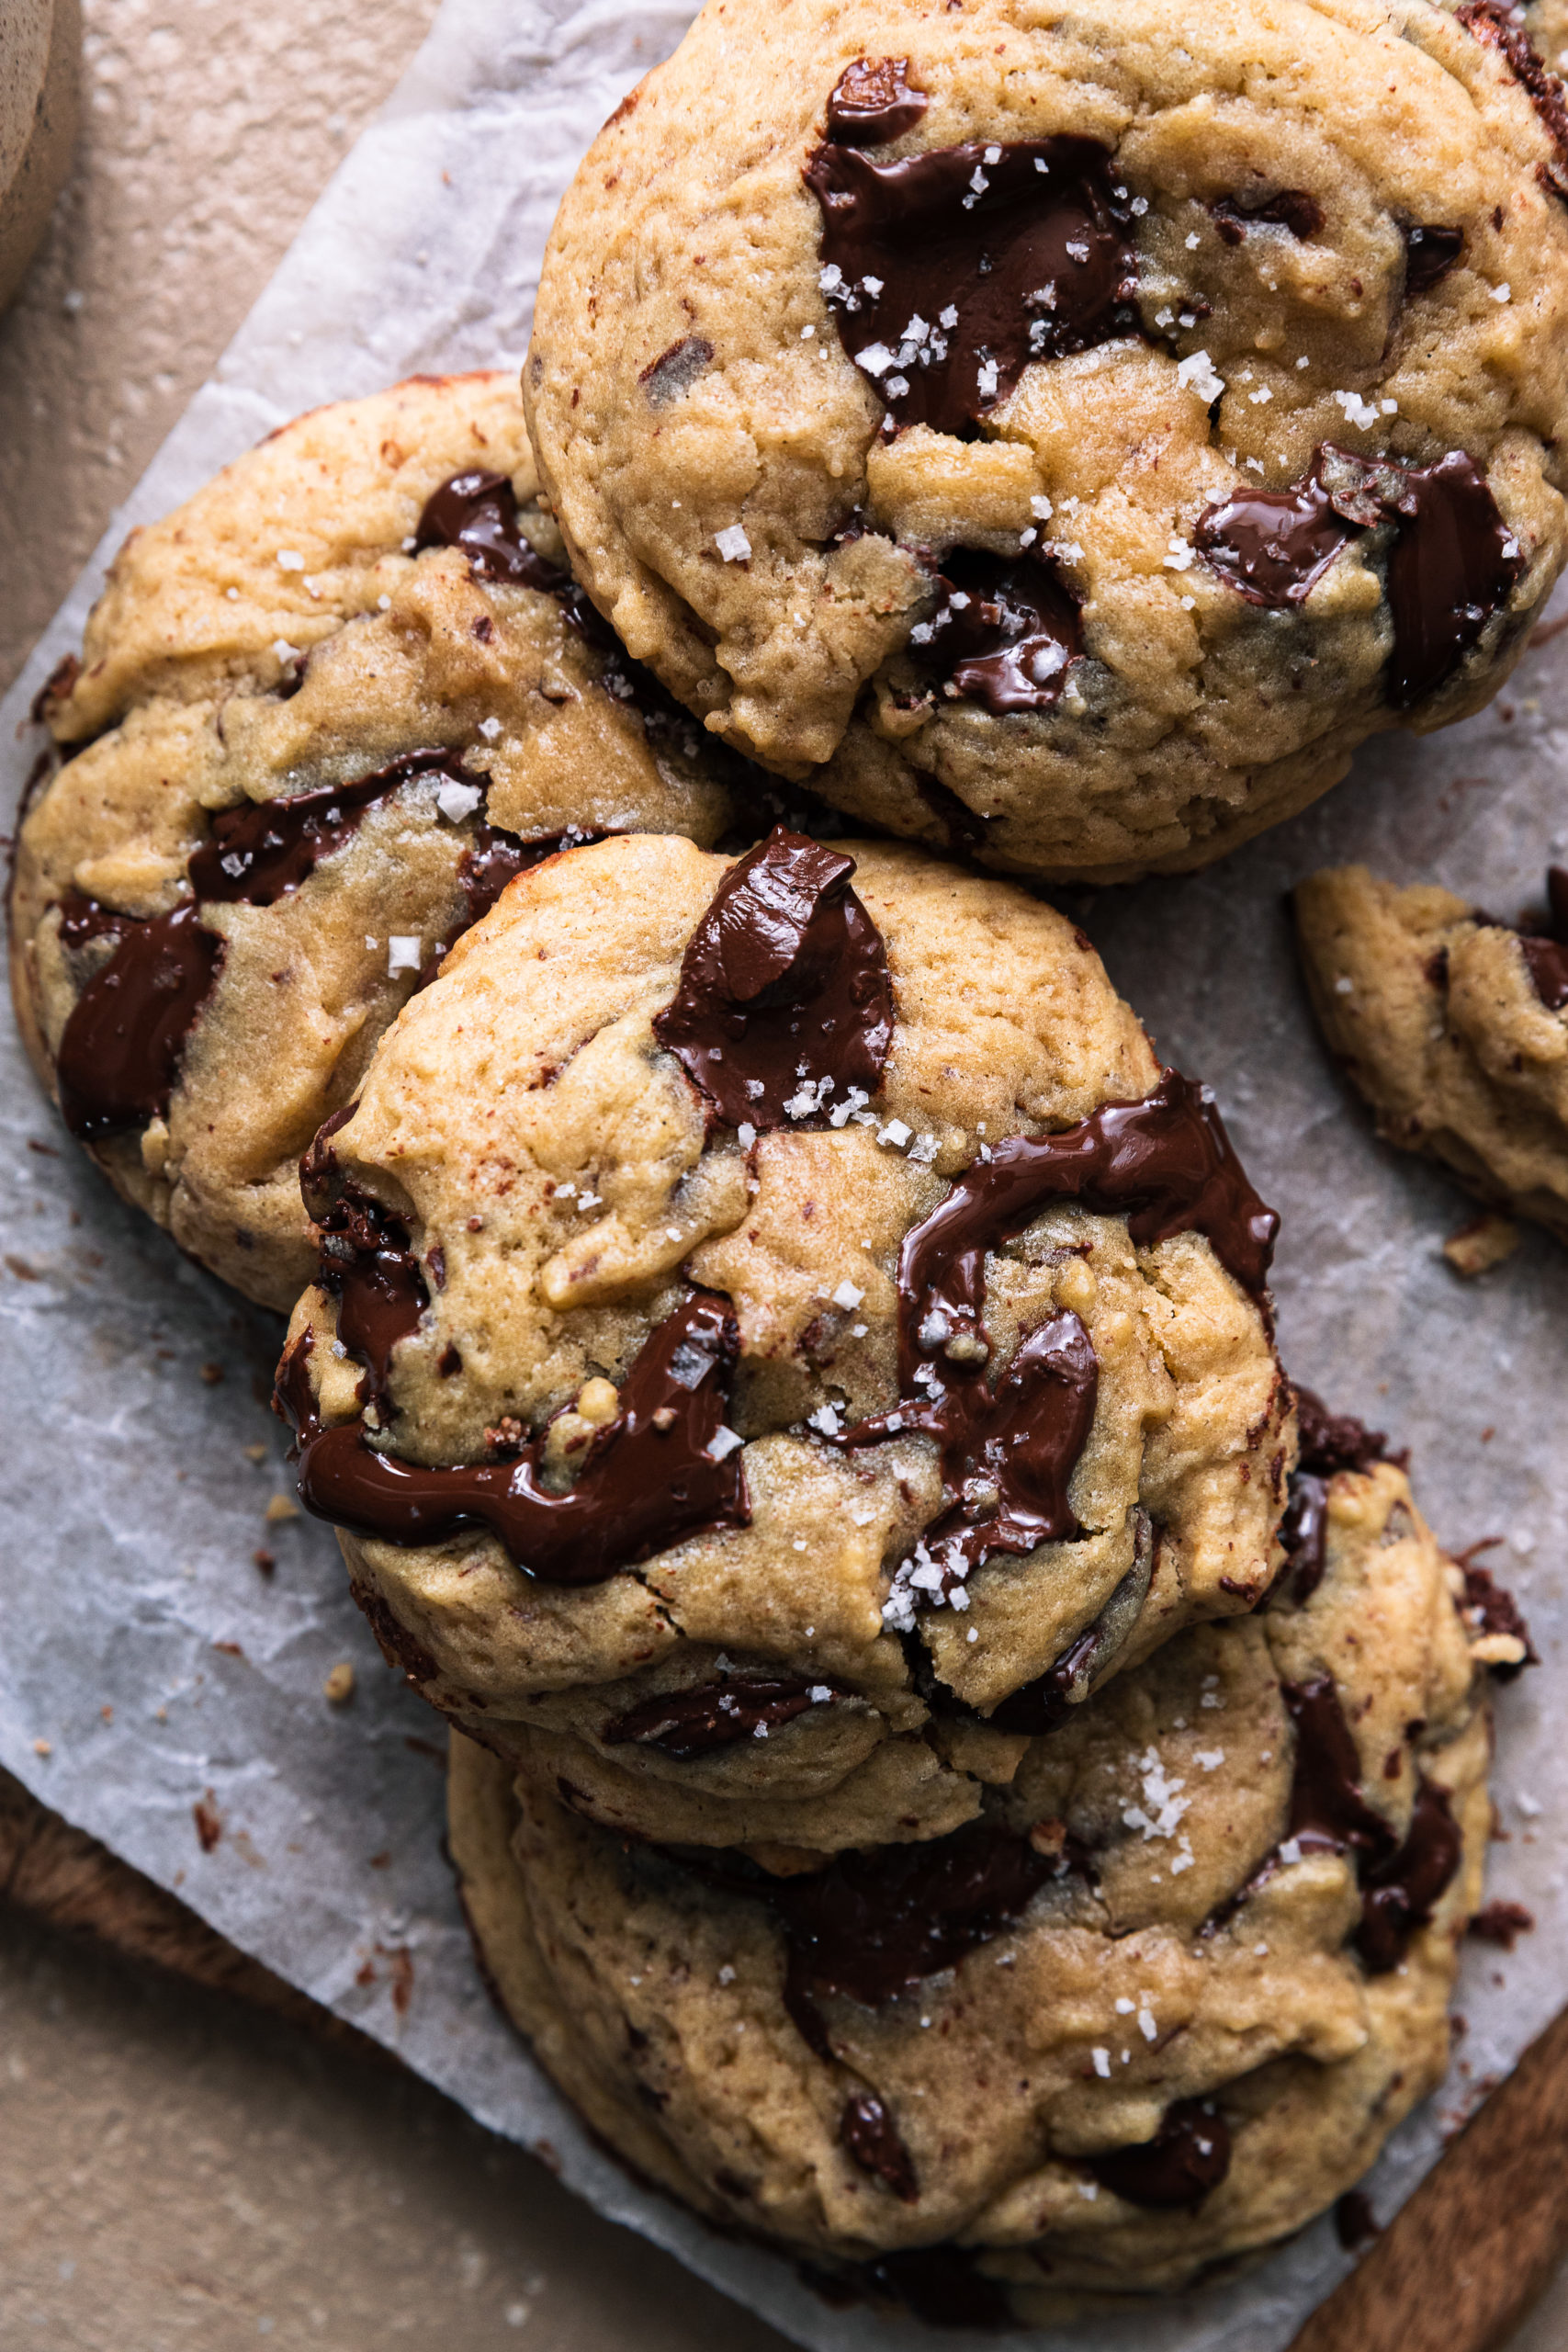 Les meilleurs cookies aux pépites de chocolat ! : Il était une